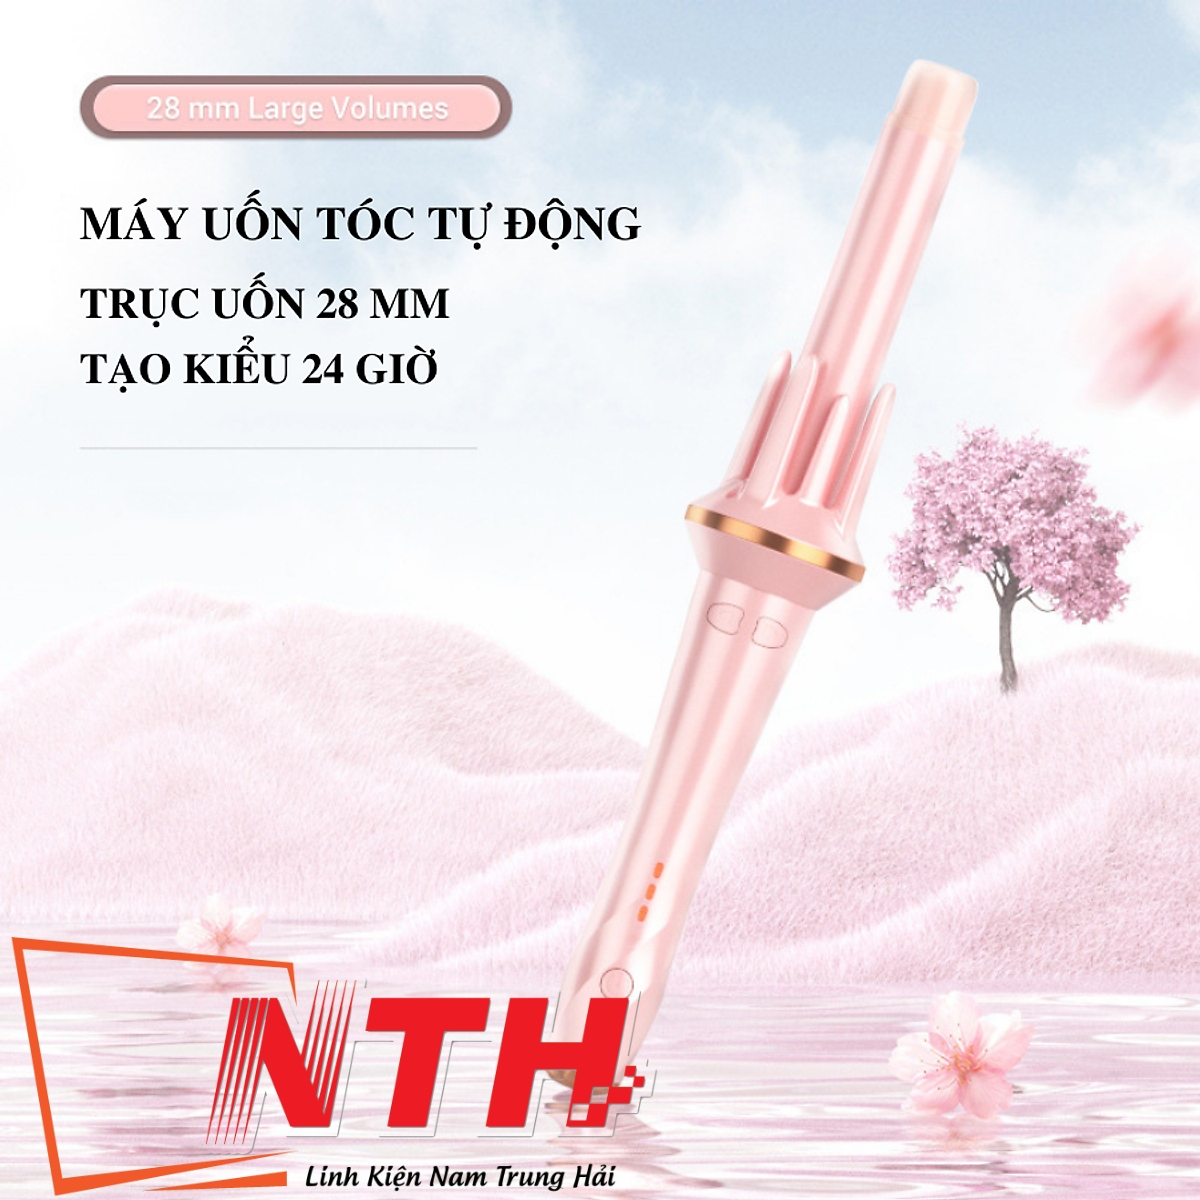 Máy uốn tóc TEKKIN TI915 tự động chất liệu gốm sứ chính hãng đường kính